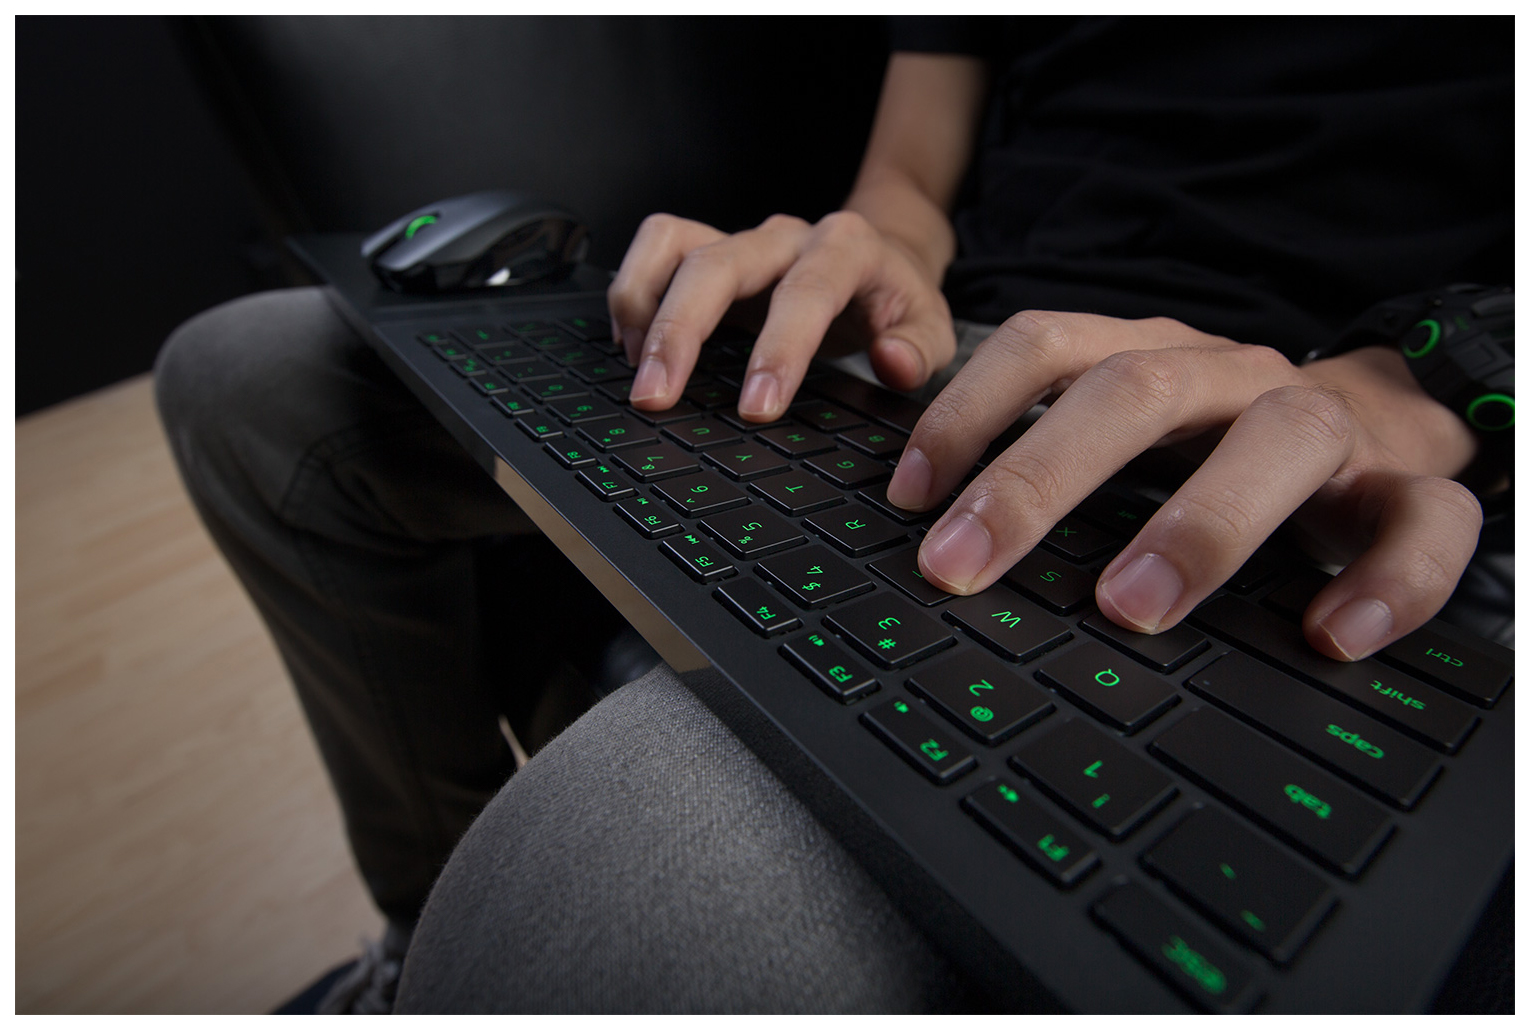 Игры на андроид поддерживающие клавиатуру. Мышь и клавиатура Razer Turret. Клавиатура и мышь для хбокс. Клавиатура и мышь для Xbox one. Хбокс с клавиатурой и мышкой.